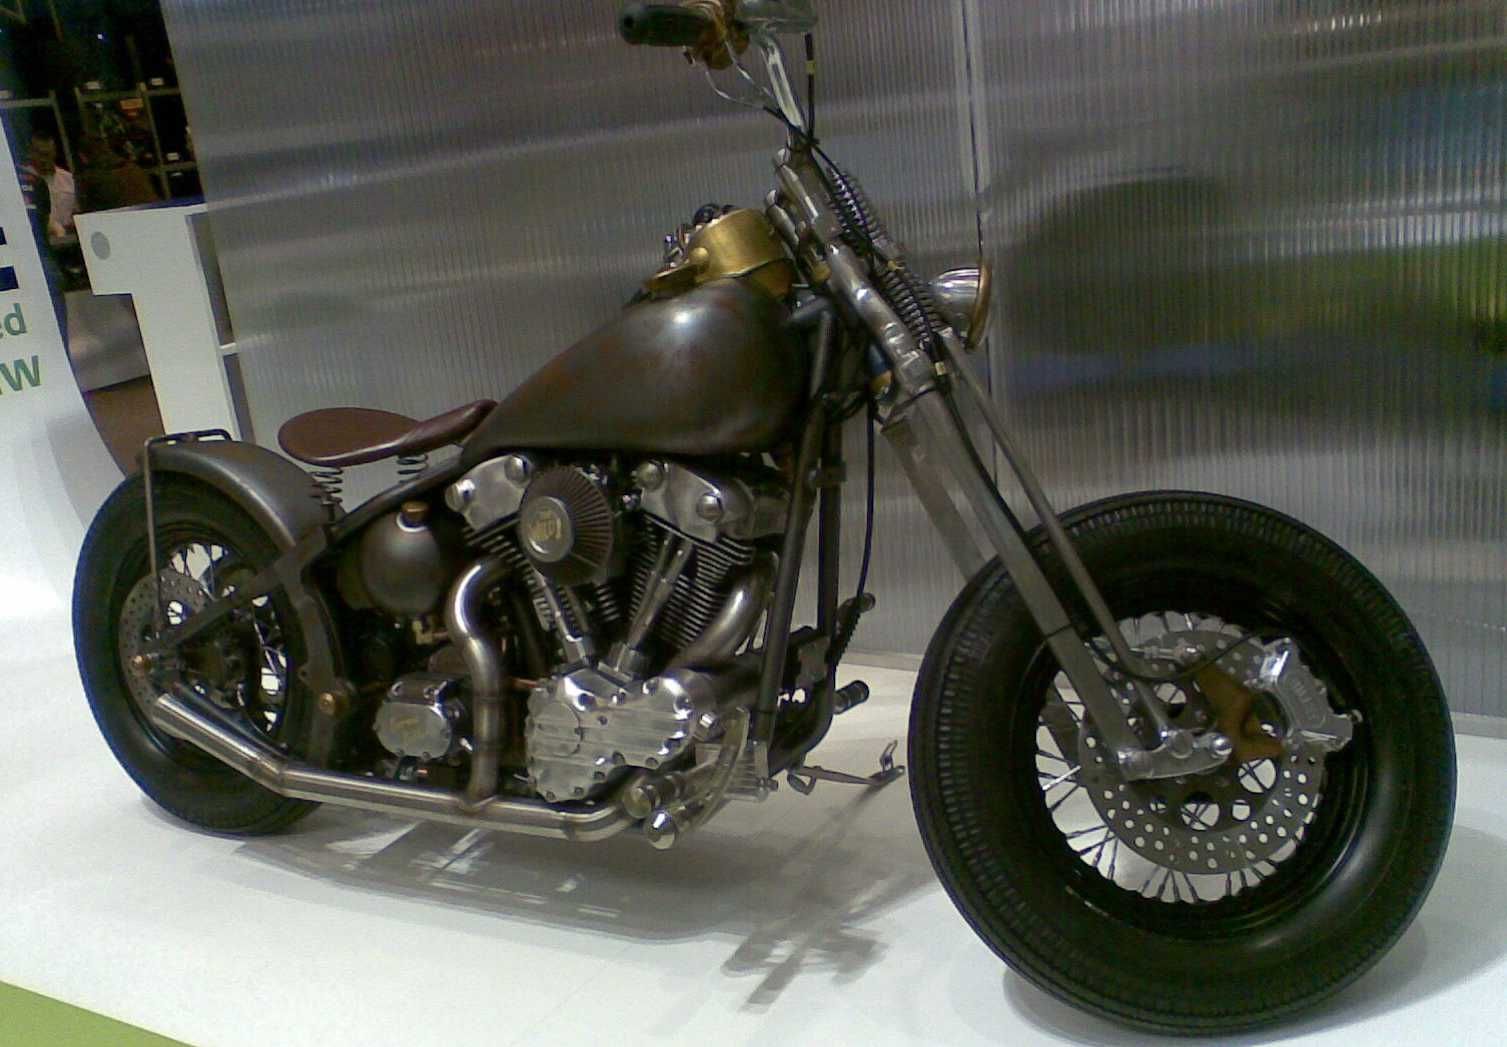  Original Harley-Davidson Bobber